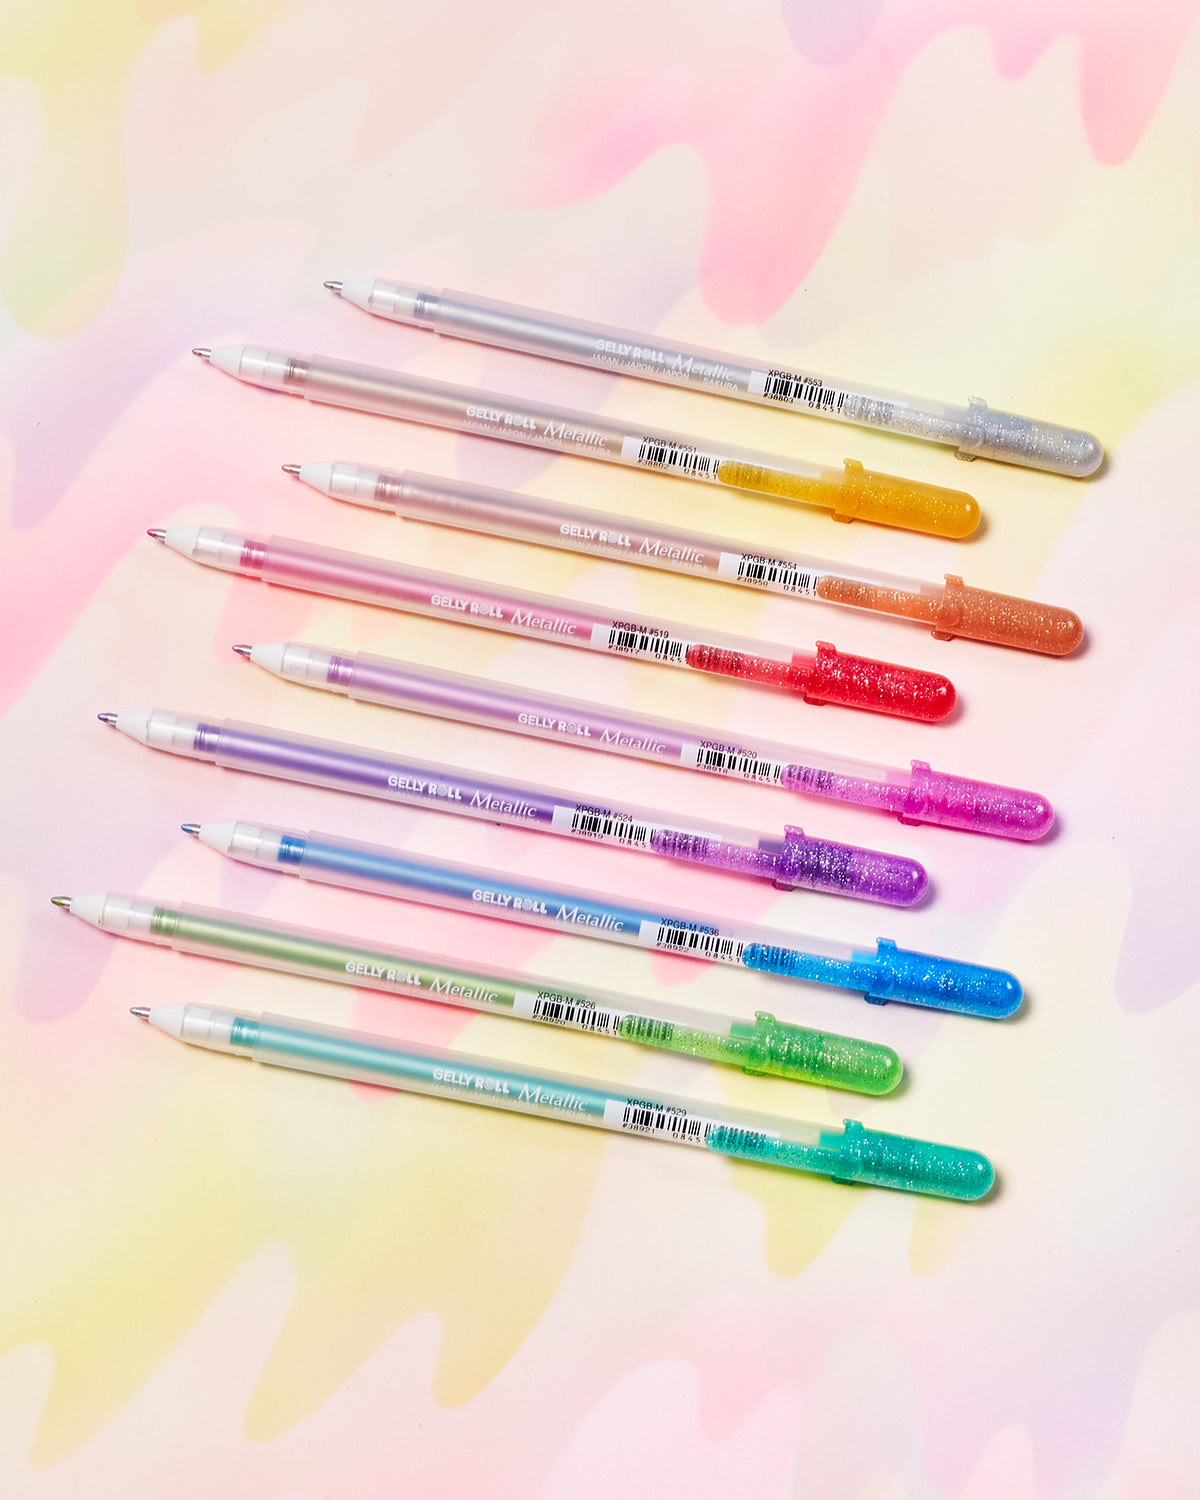 Sakura Gelly Roll Metallic Pens